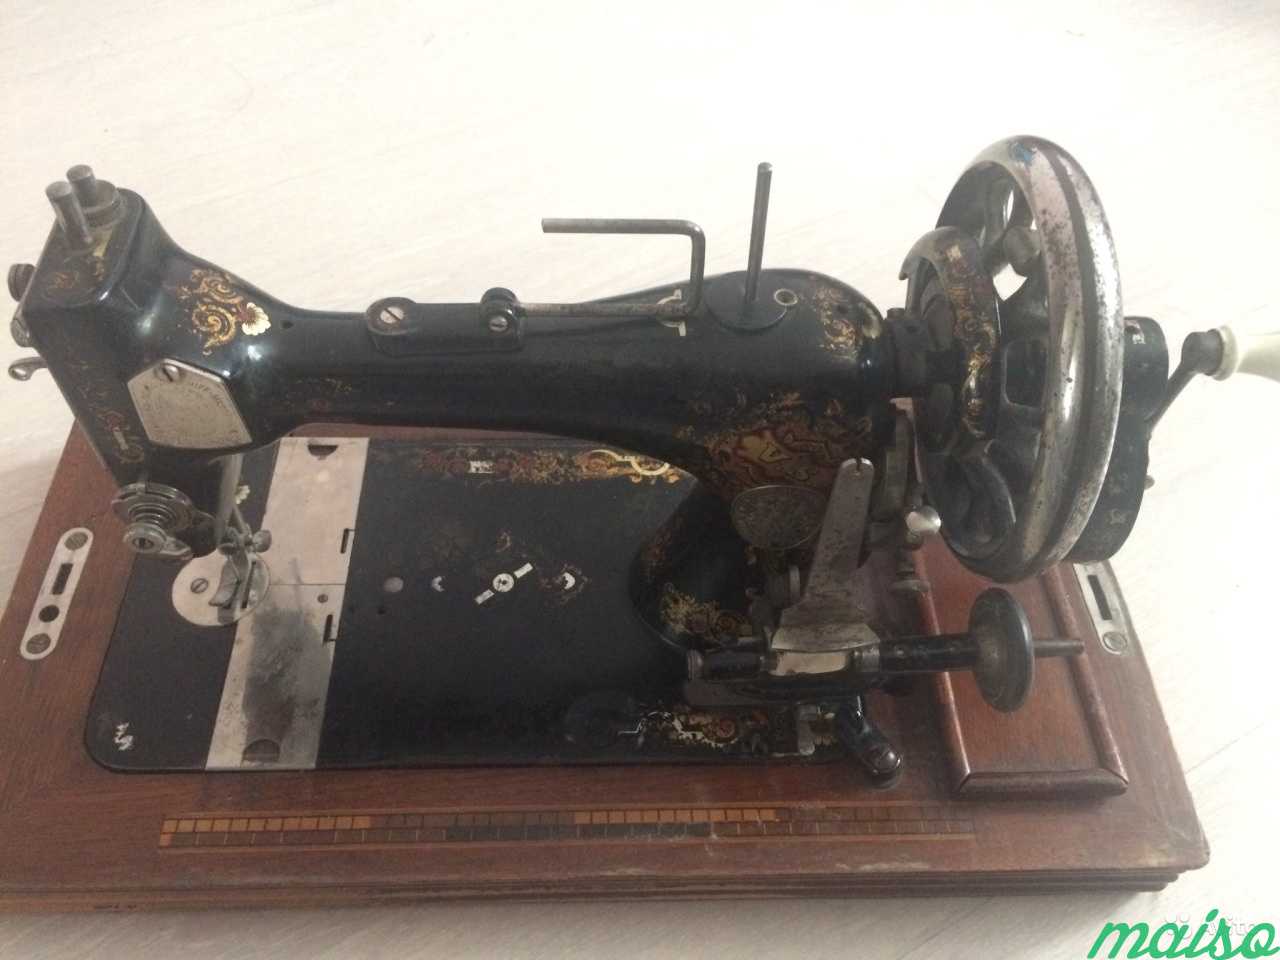 Швейная машинка кехлер. Швейная машина kohler. Kohler Altenburg швейная. Швейная машина Altenburg kohler класс 50. Швейная машинка kohler 19 век.